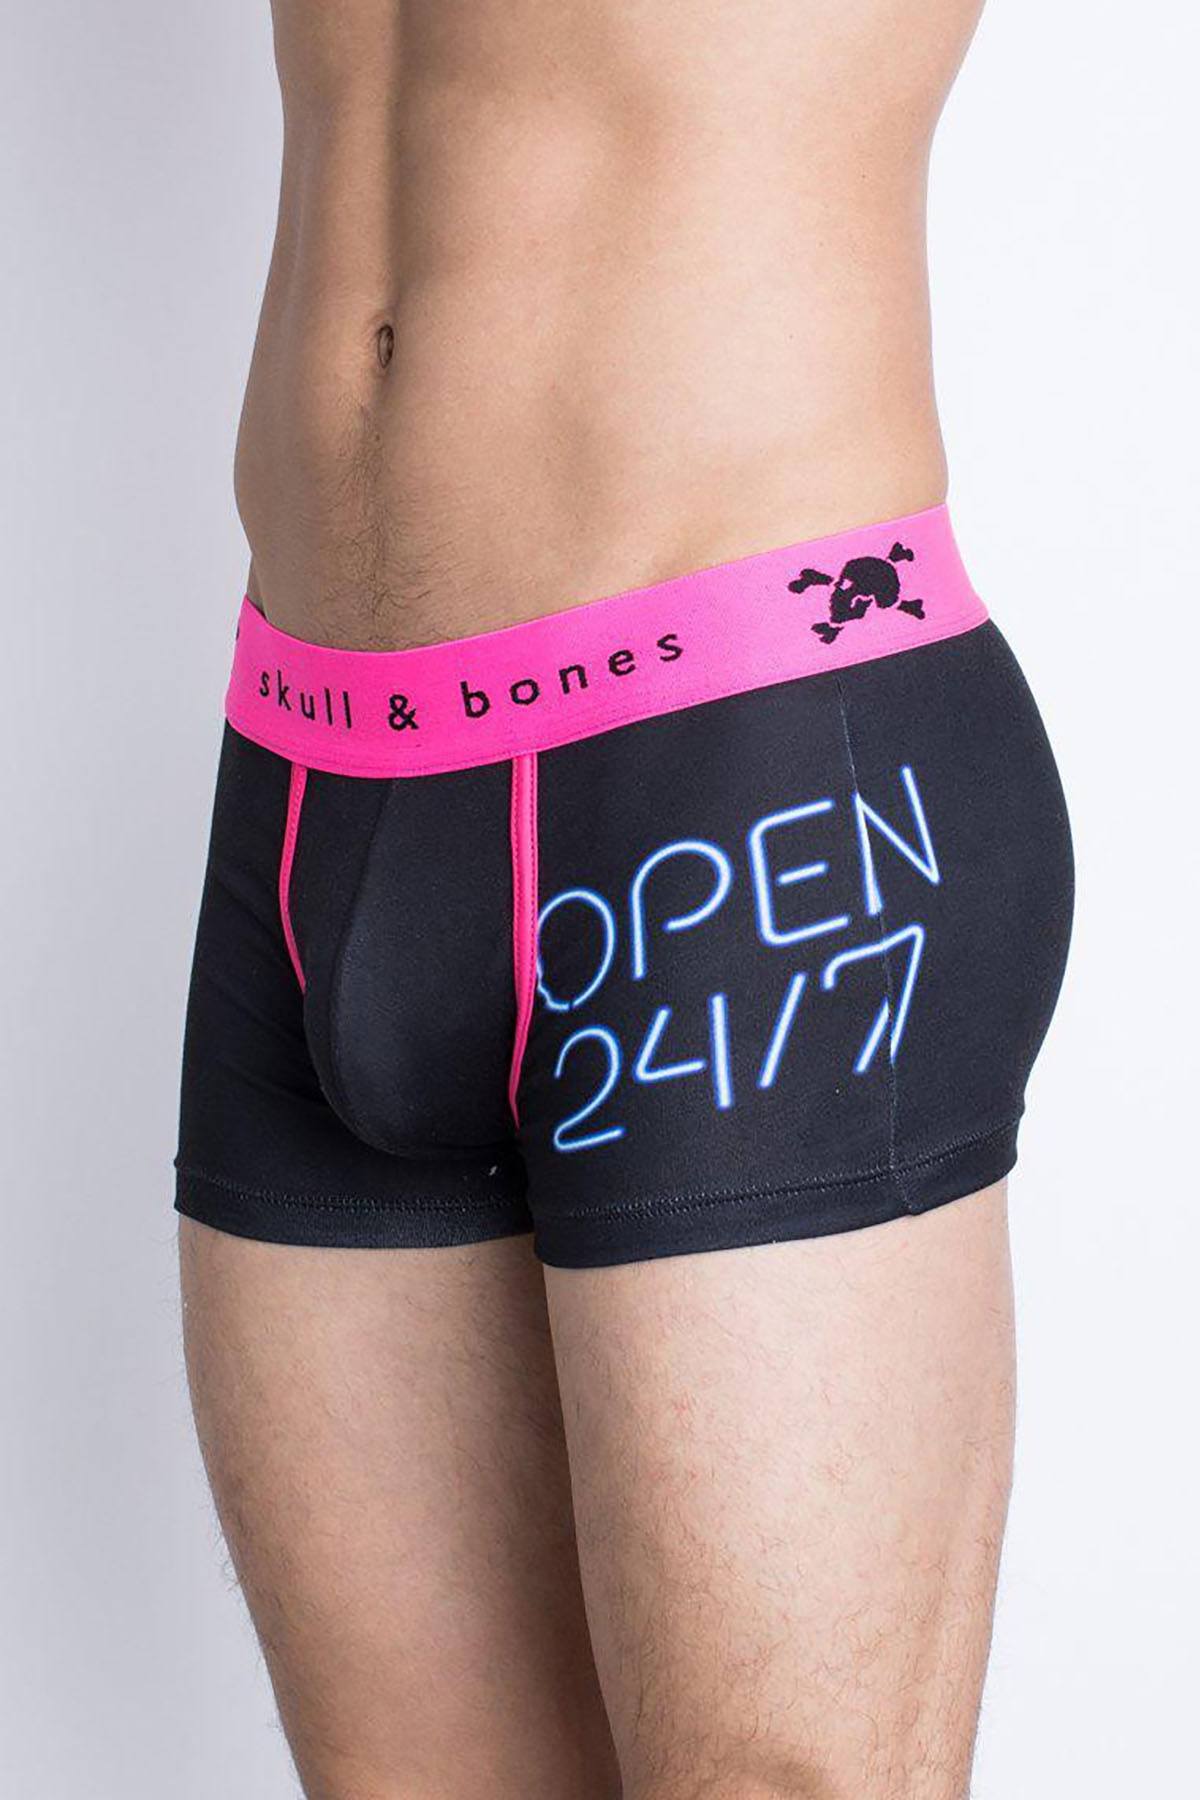 Skull & Bones Black/Pink Open 24/7 Neon Trunk